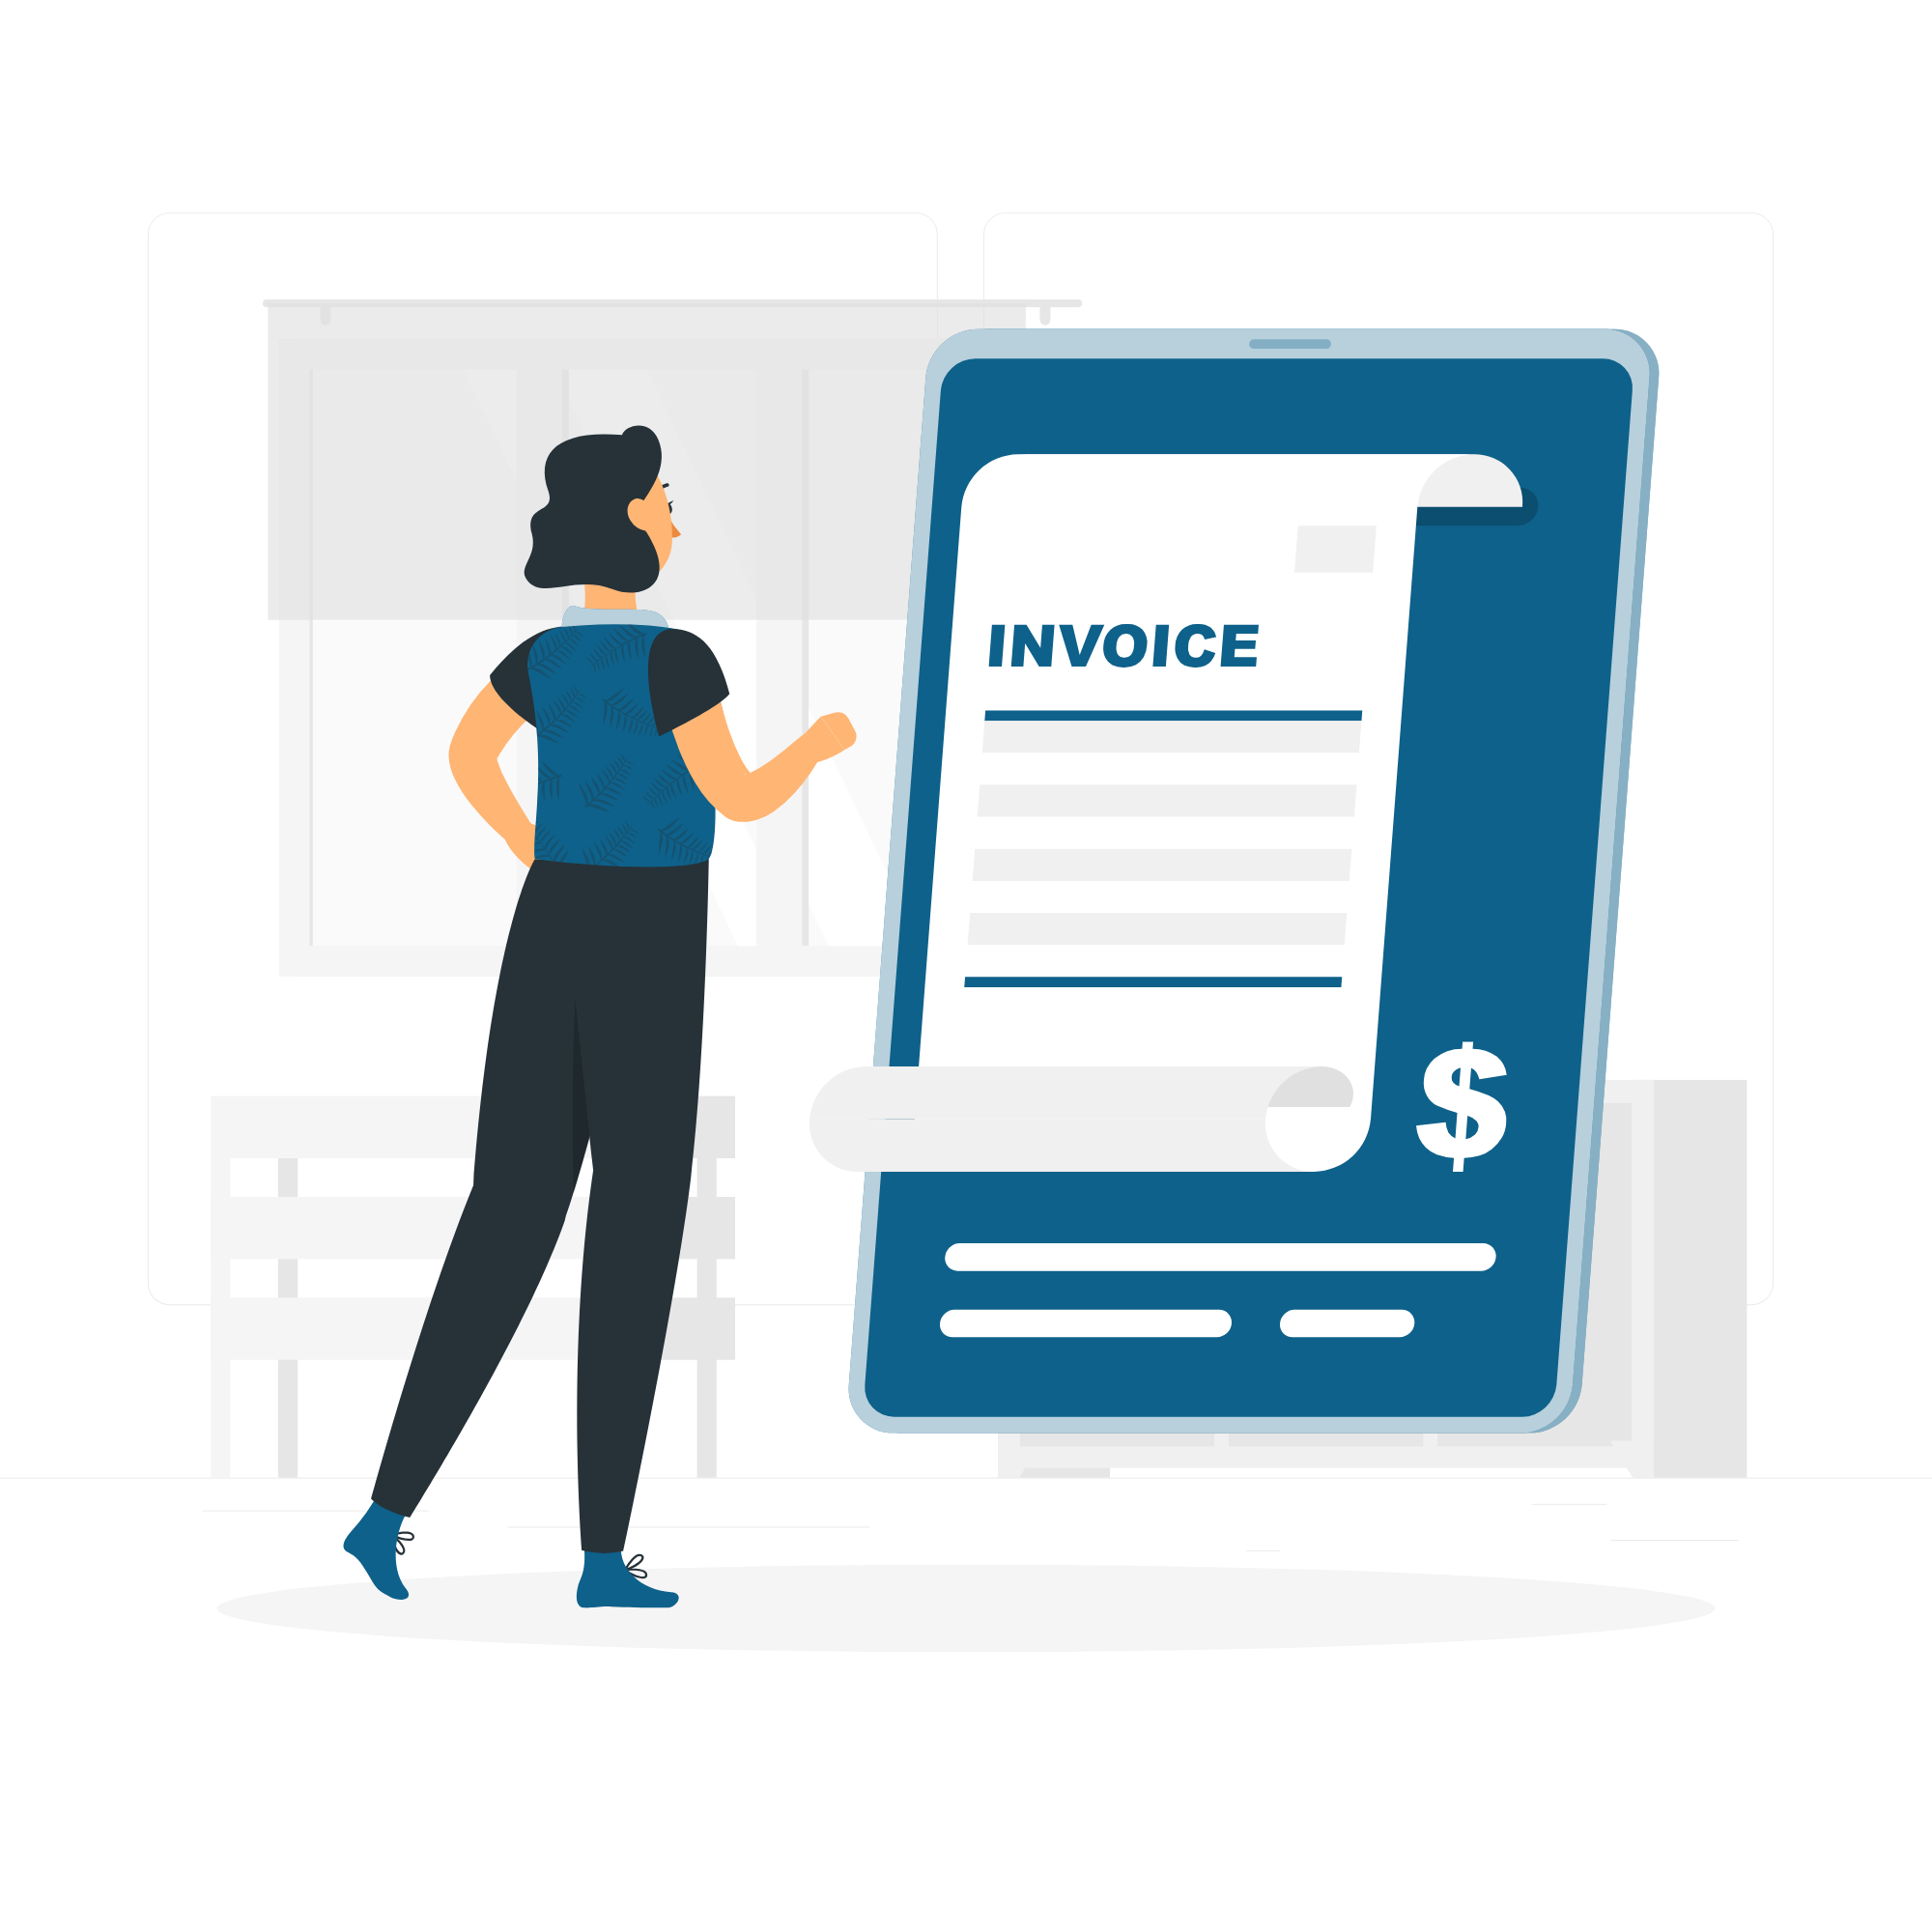 Invoice-rafiki